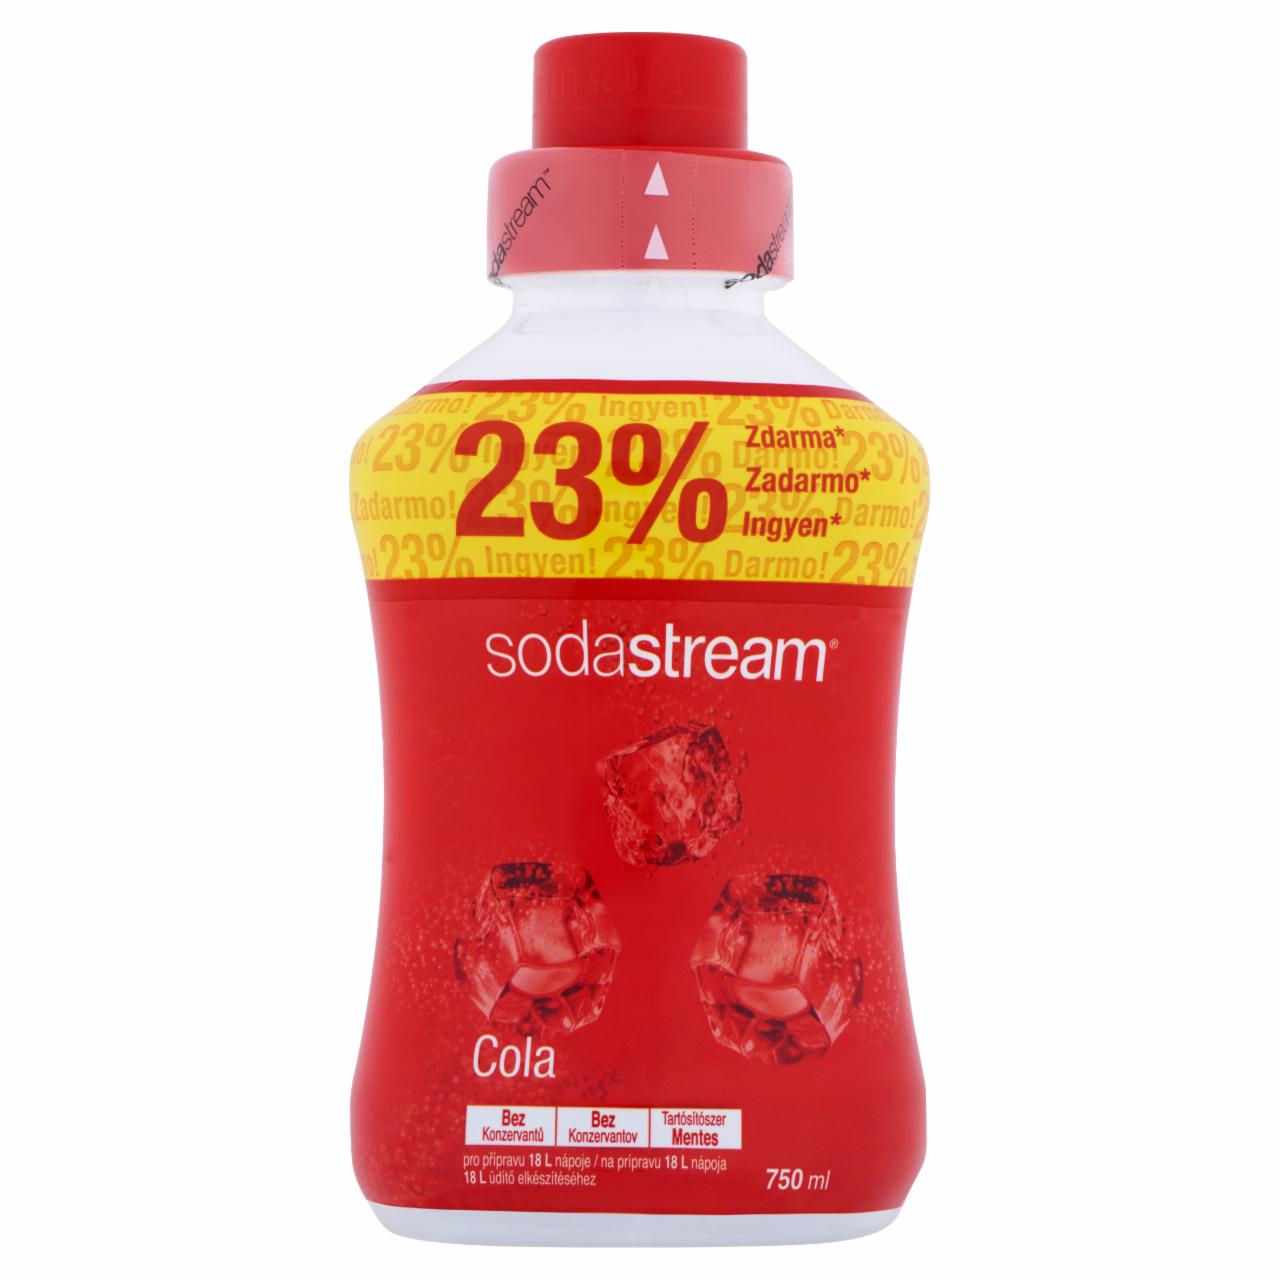 Képek - Sodastream cola ízű szörp cukorral és édesítőszerrel 750 ml